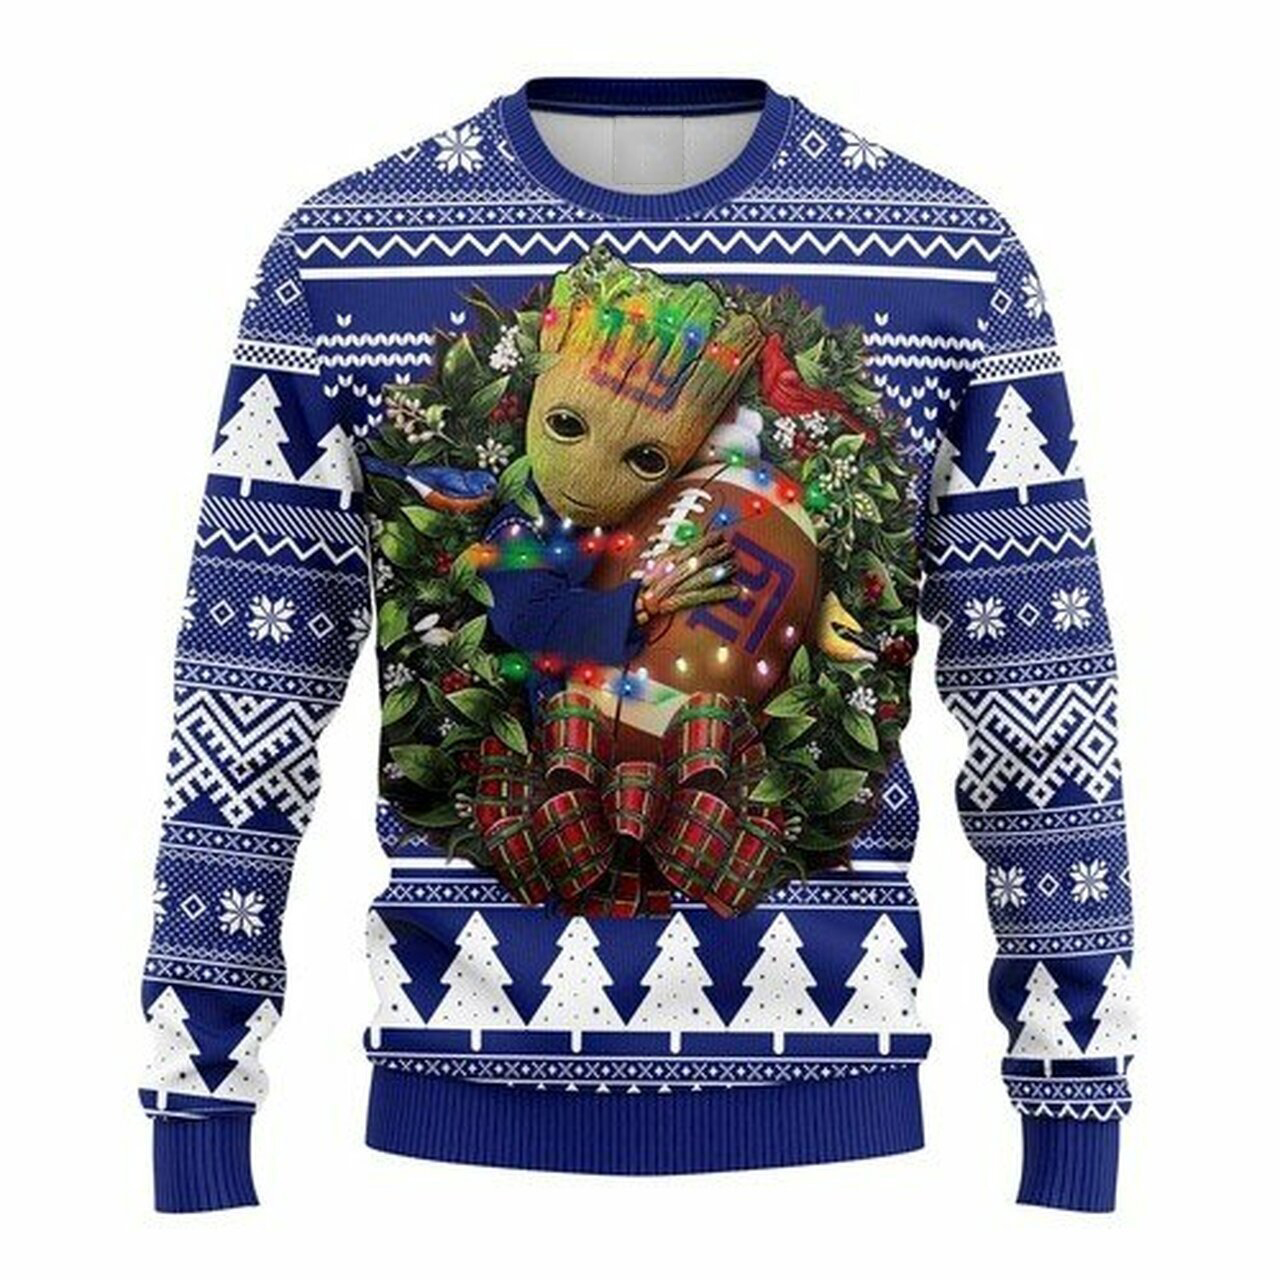 NFL New York Giants Groot hug ugly christmas sweater